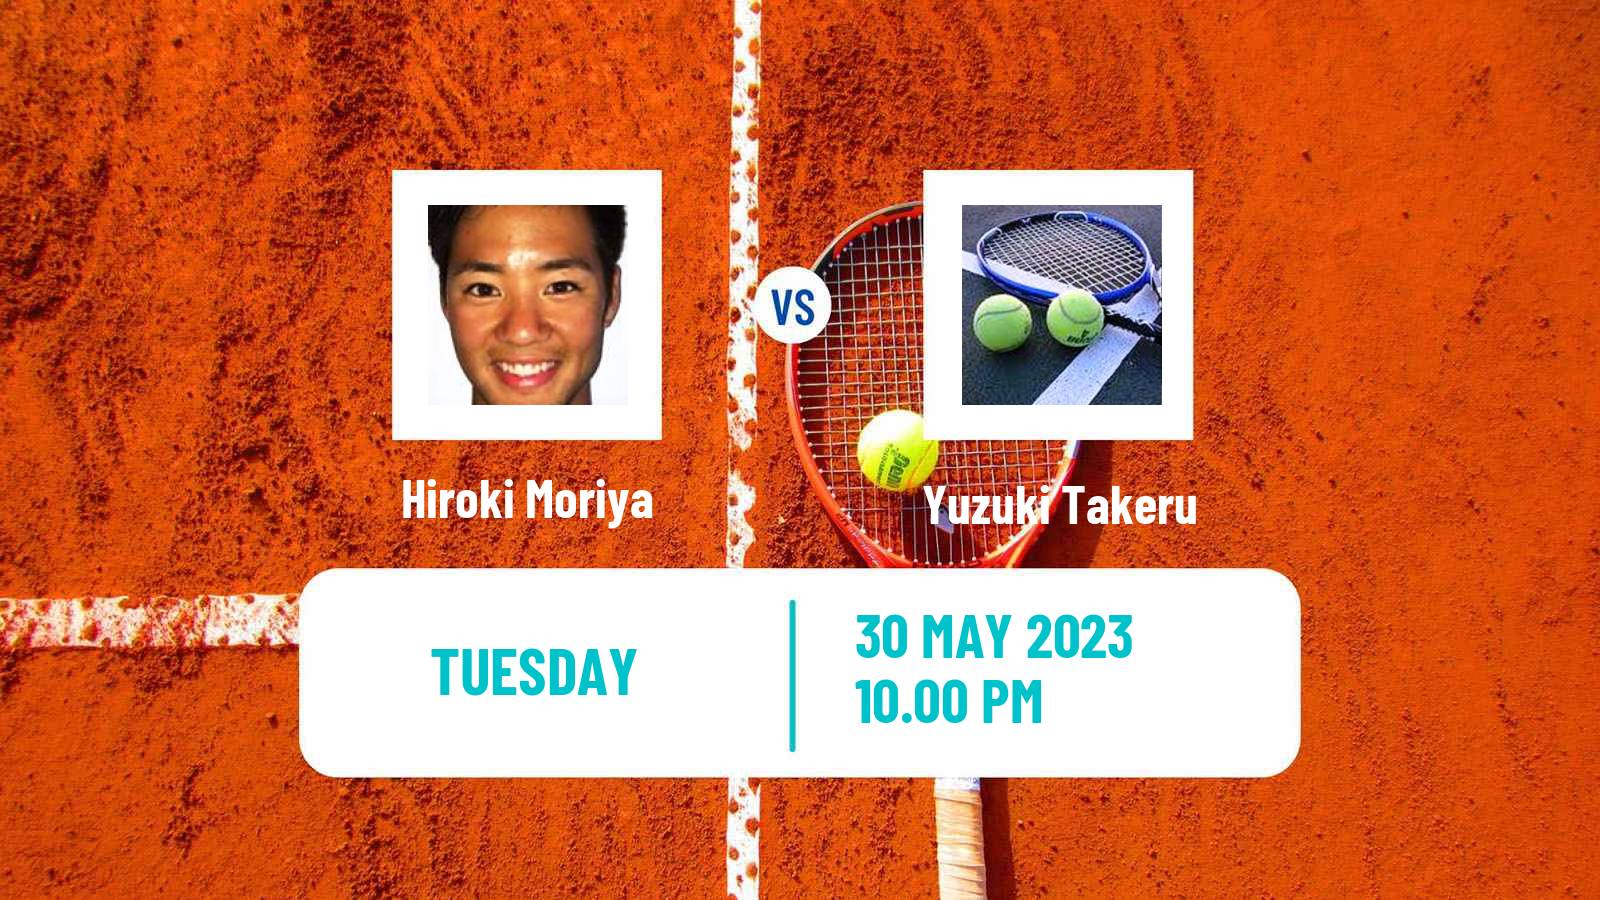 Tennis ITF M25 Jakarta 4 Men Hiroki Moriya - Takeru Yuzuki